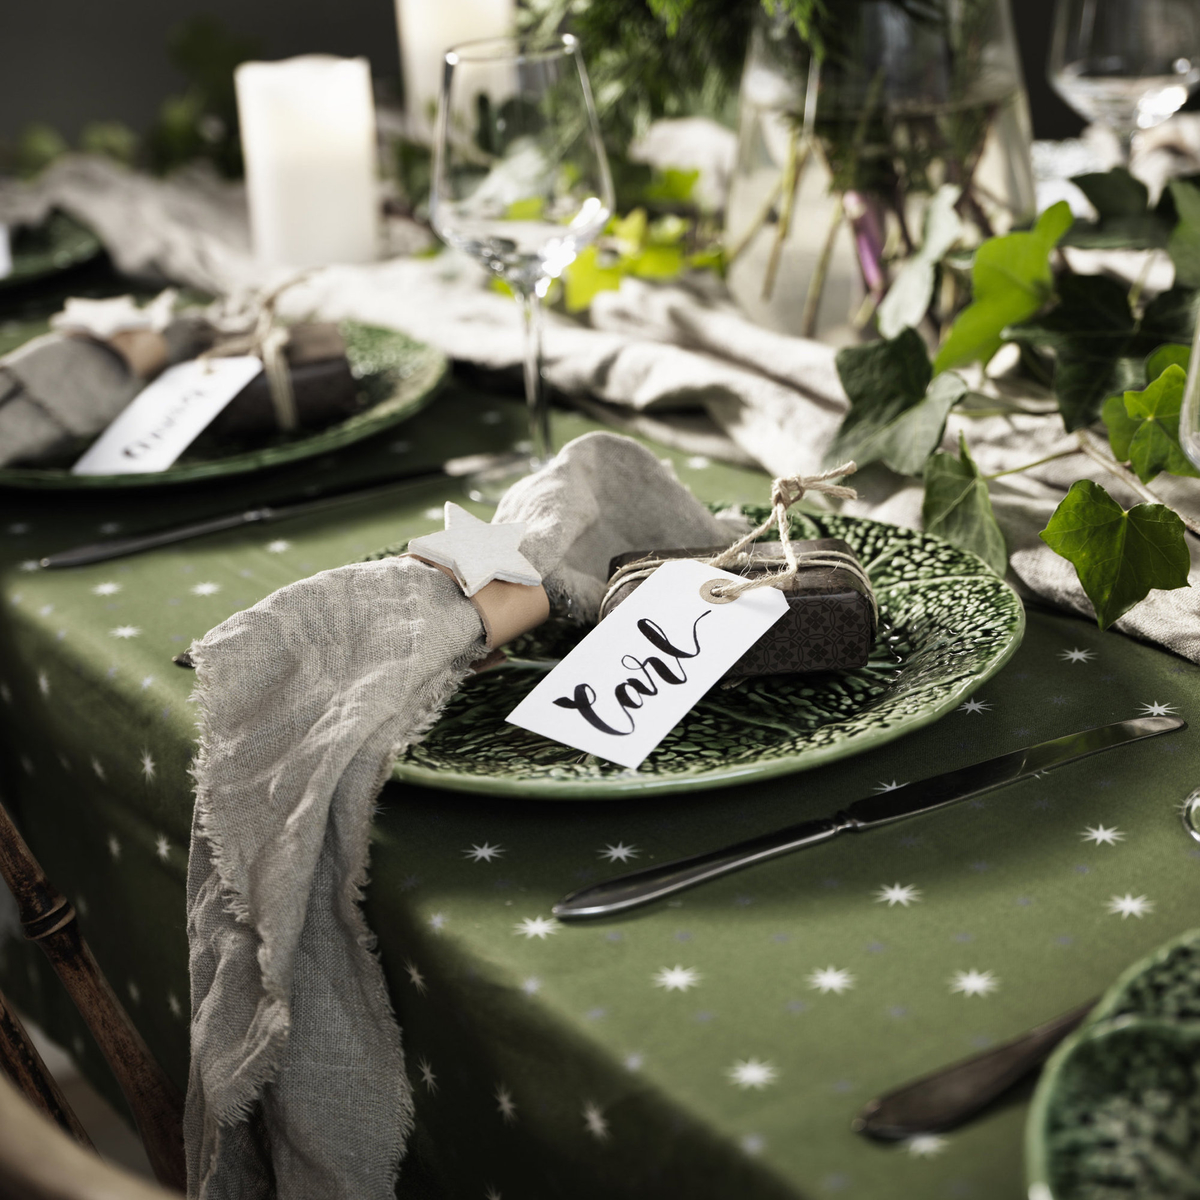 Dekk et julefint bord i grønt og natur